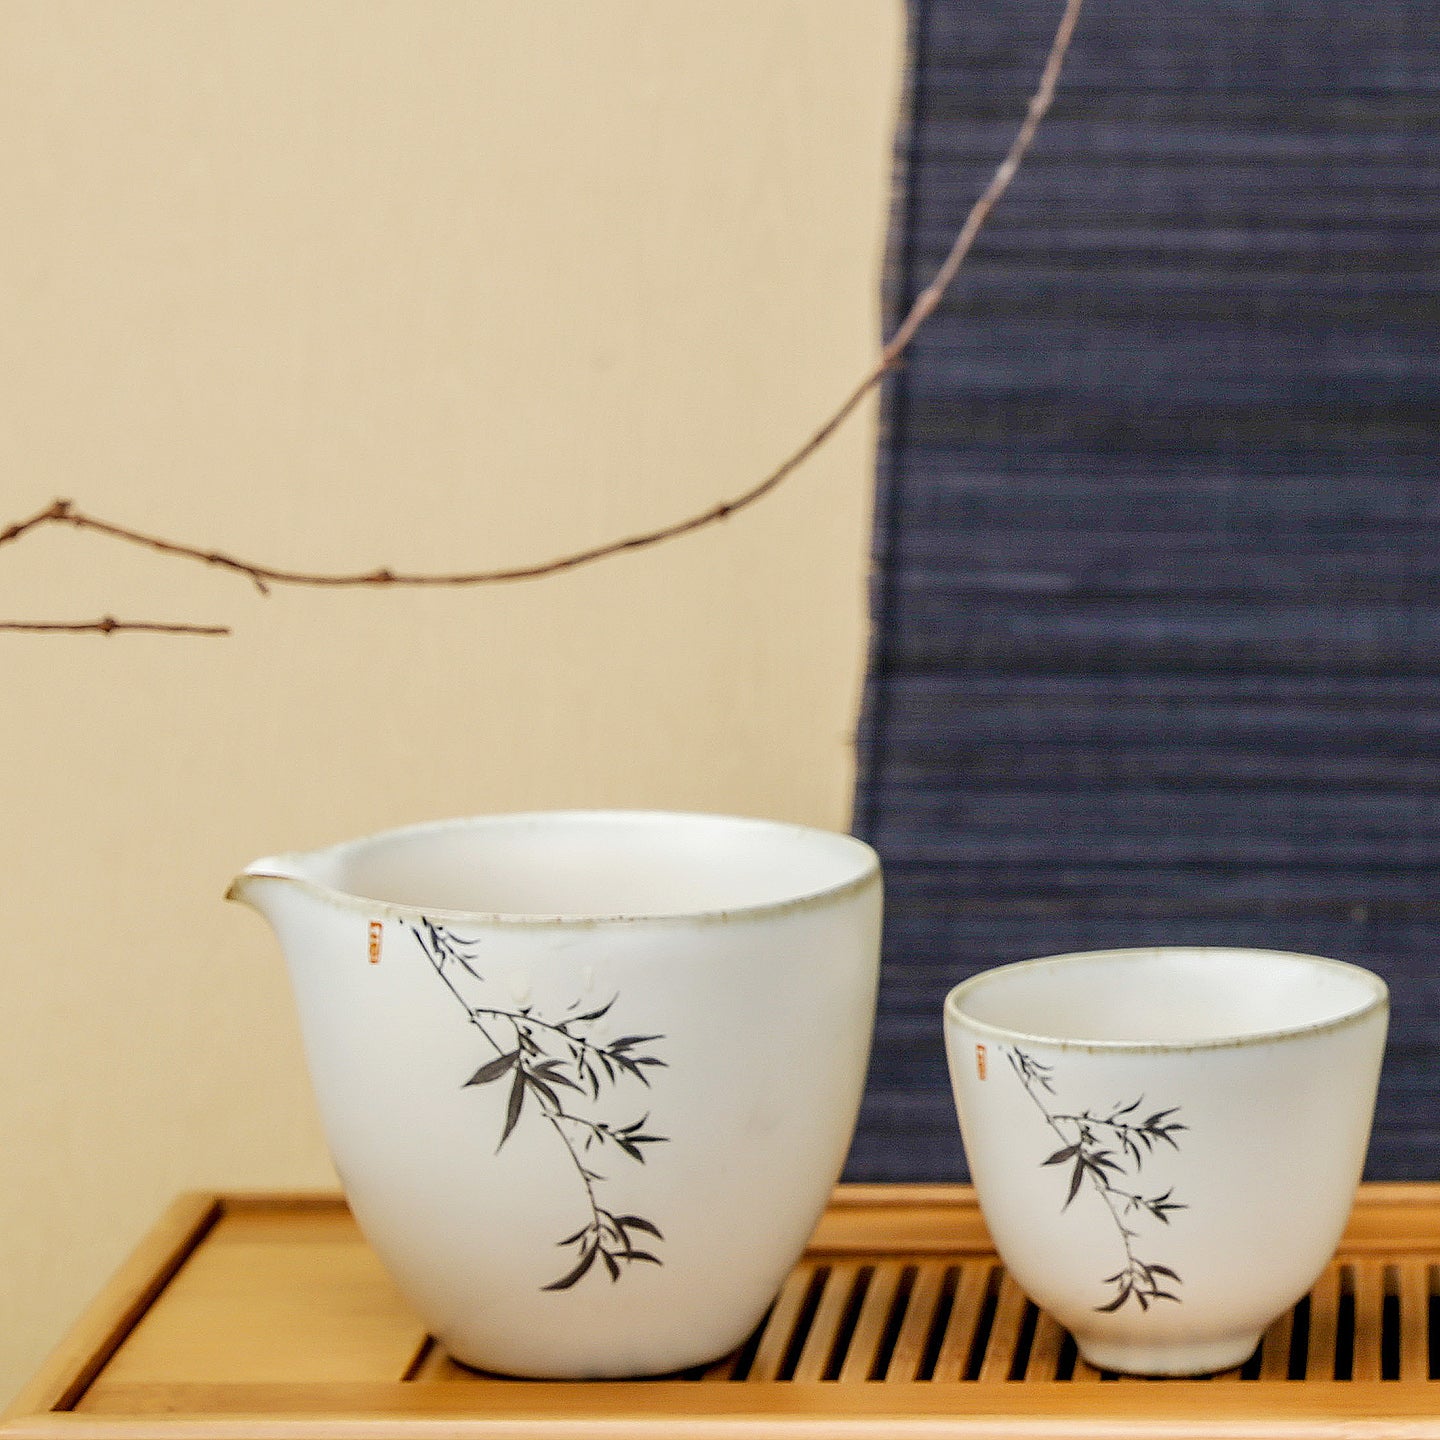 https://www.eilong.com/cdn/shop/products/chinese-tea-pitcher-art-yellow-glaze-bamboo-01.jpg?v=1654826005